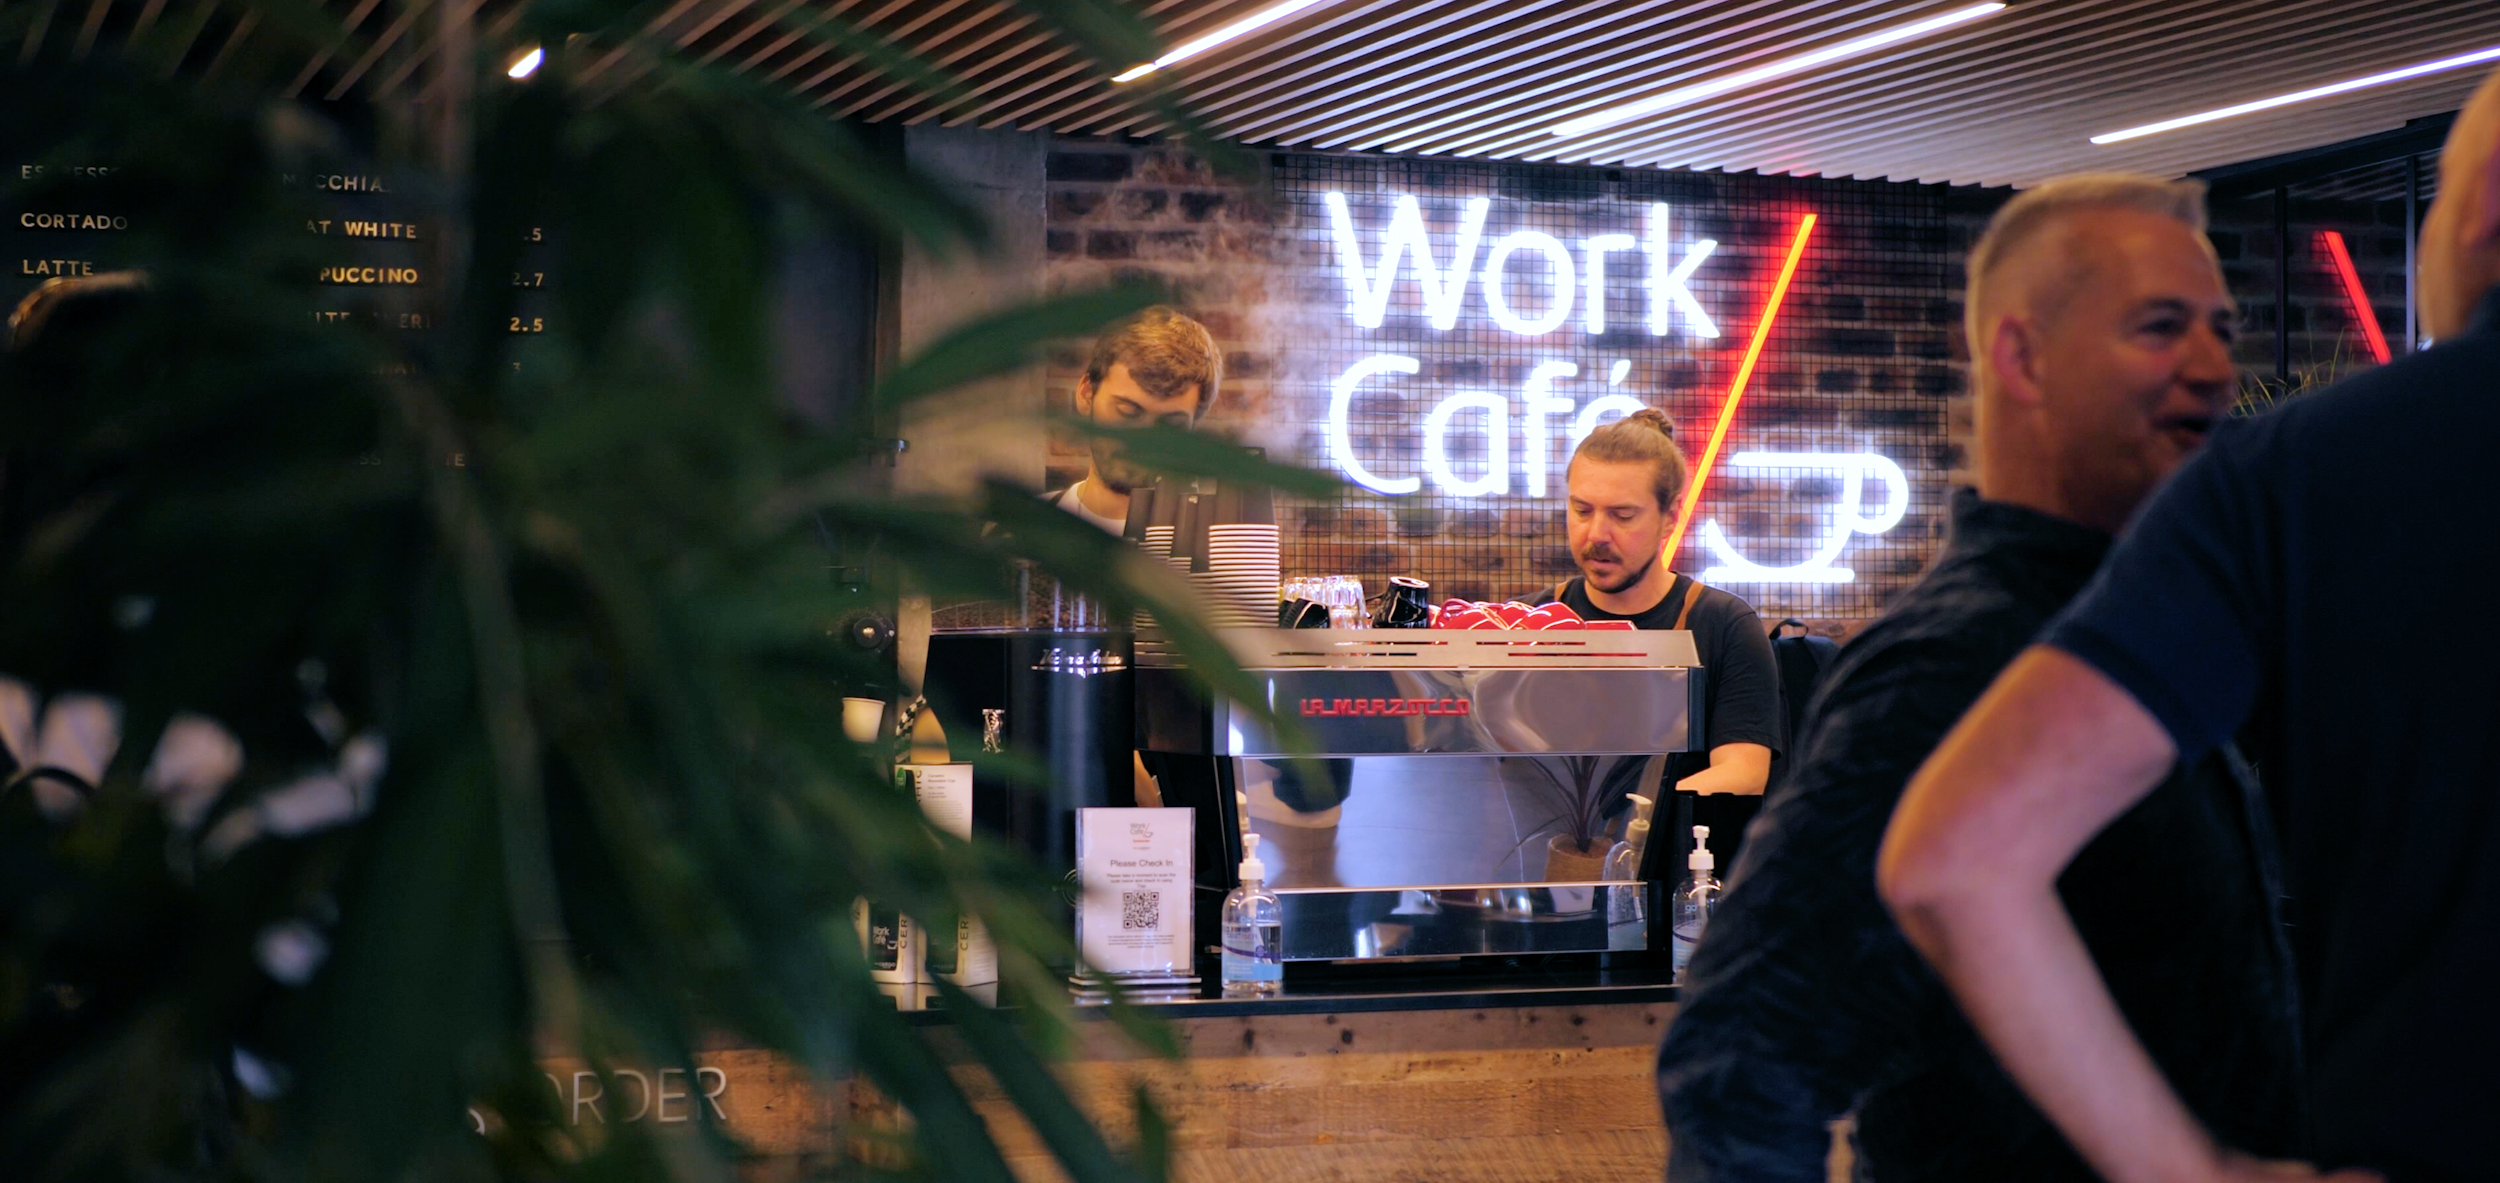 Santander Work Cafe